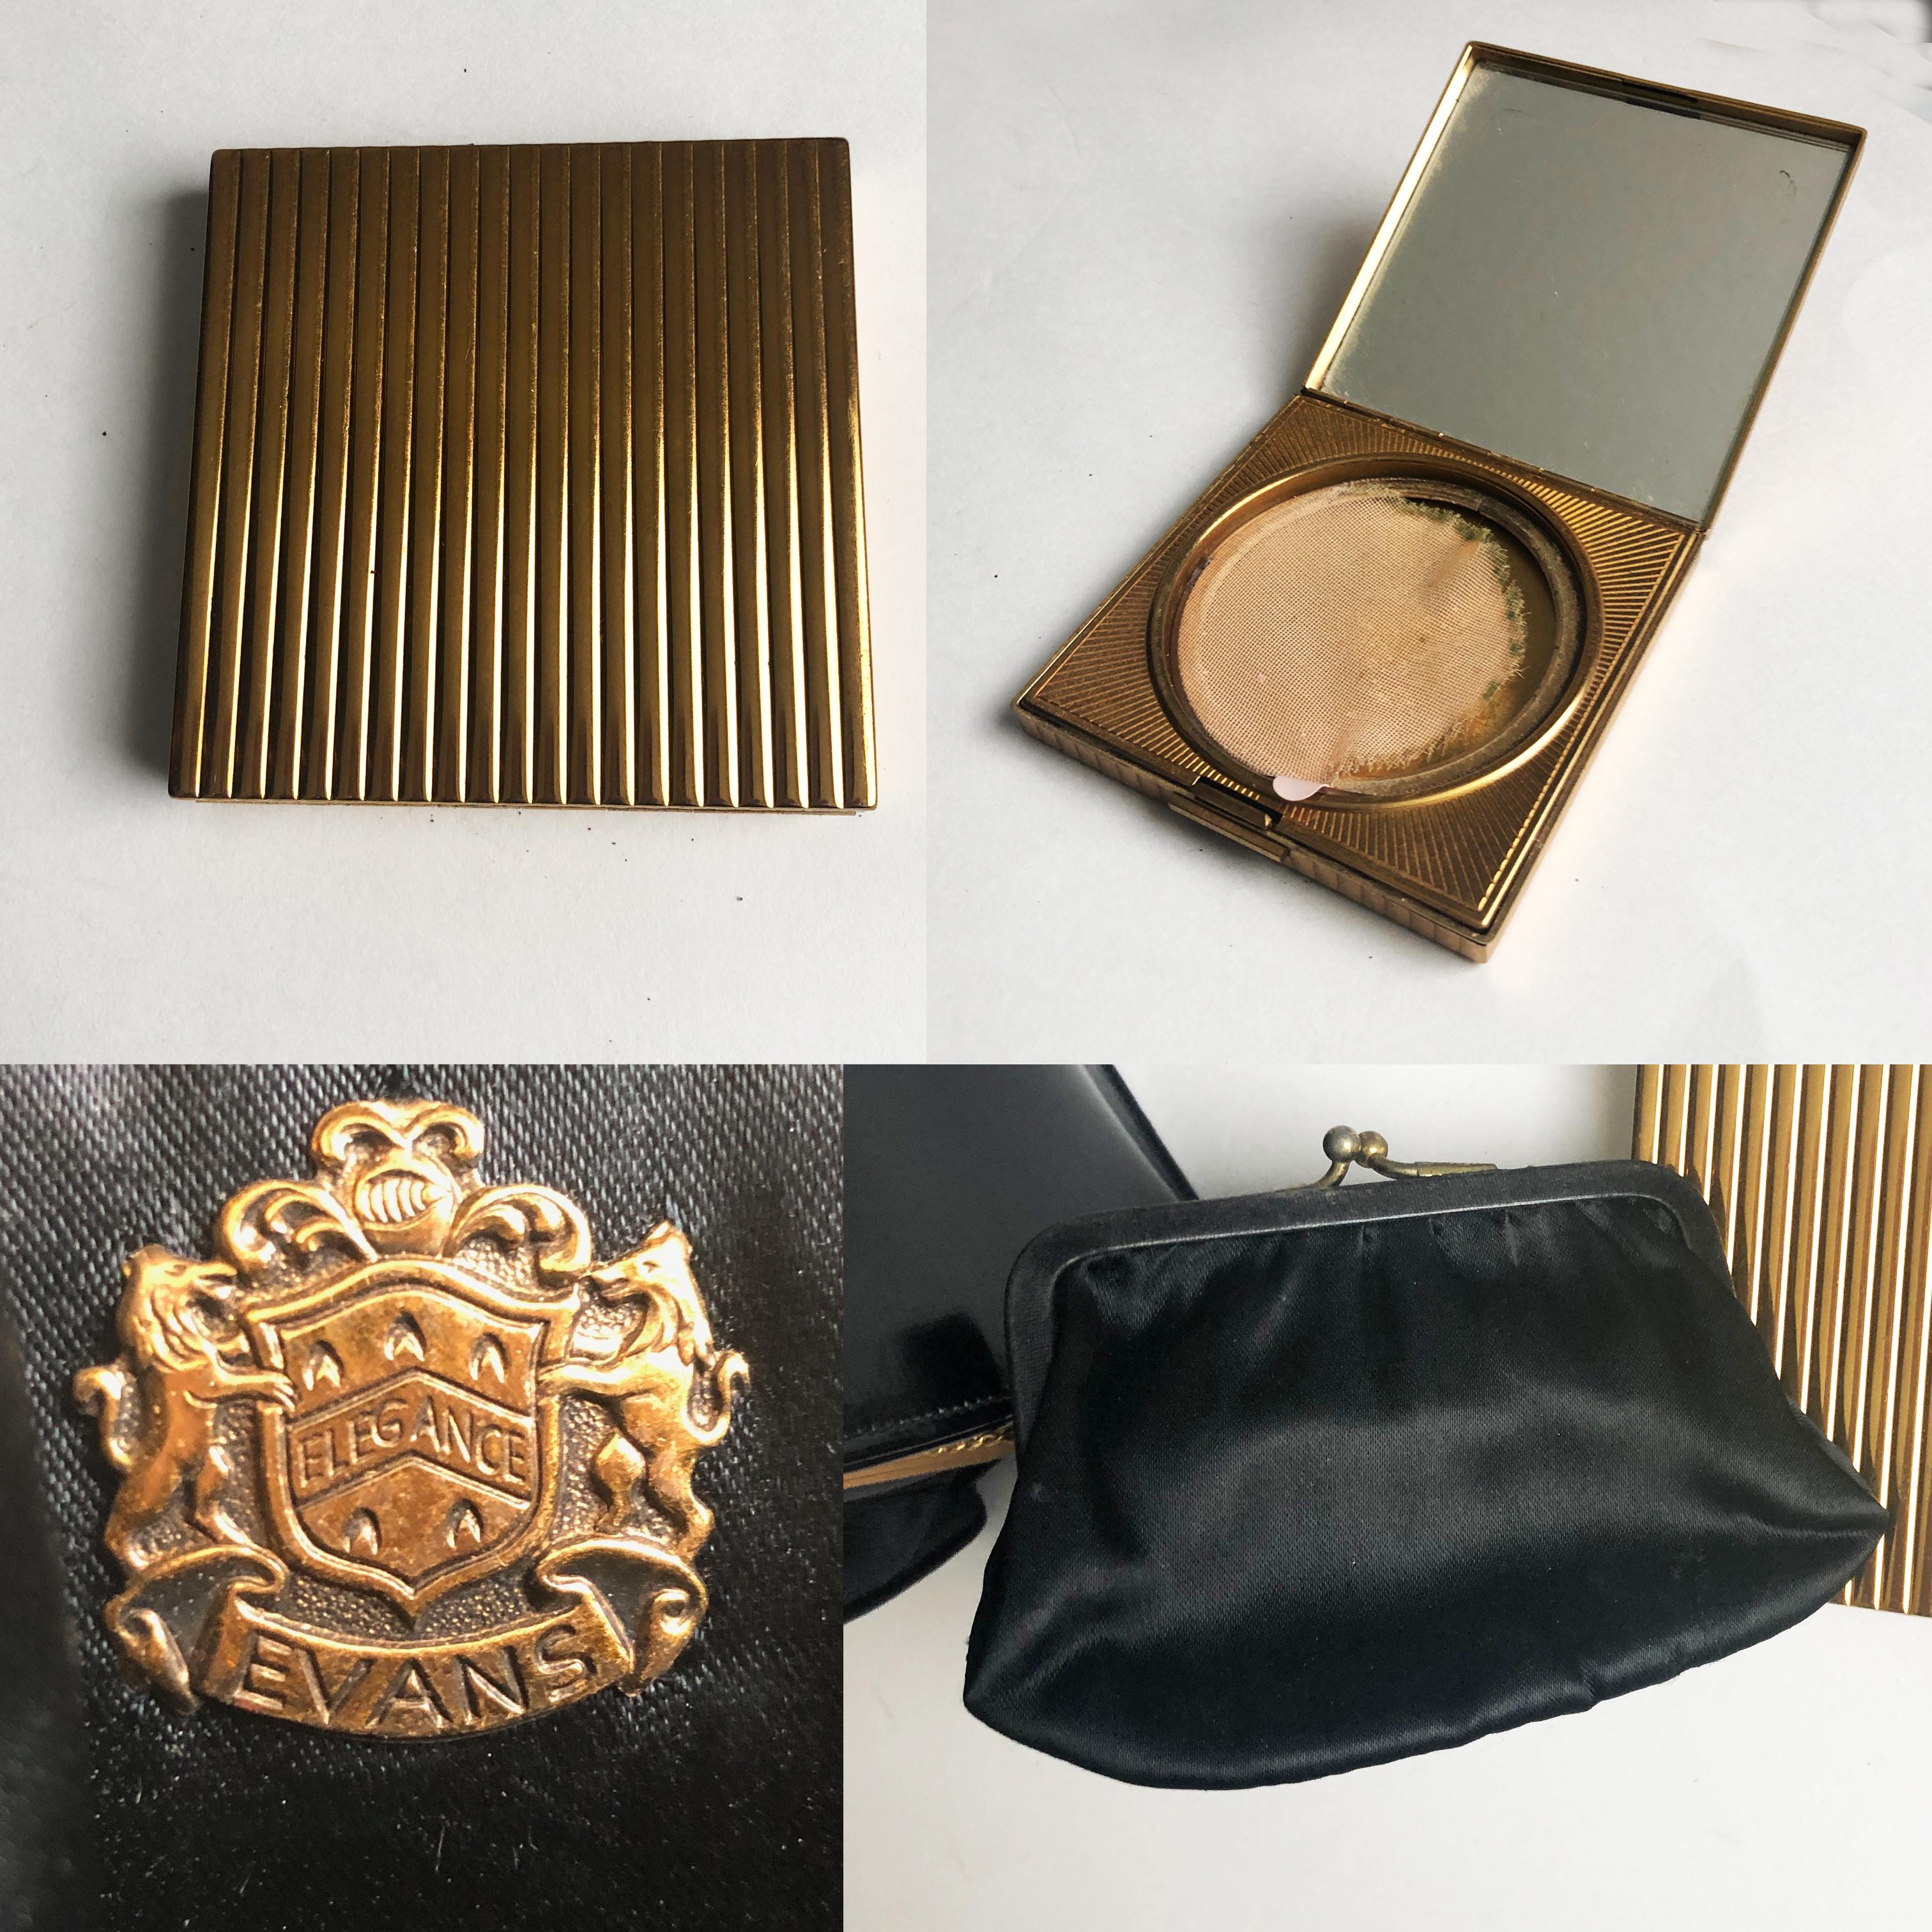 Evans Black Calf Handbag with Clock & Mirror Compact Deco Style 50s Vintage 1